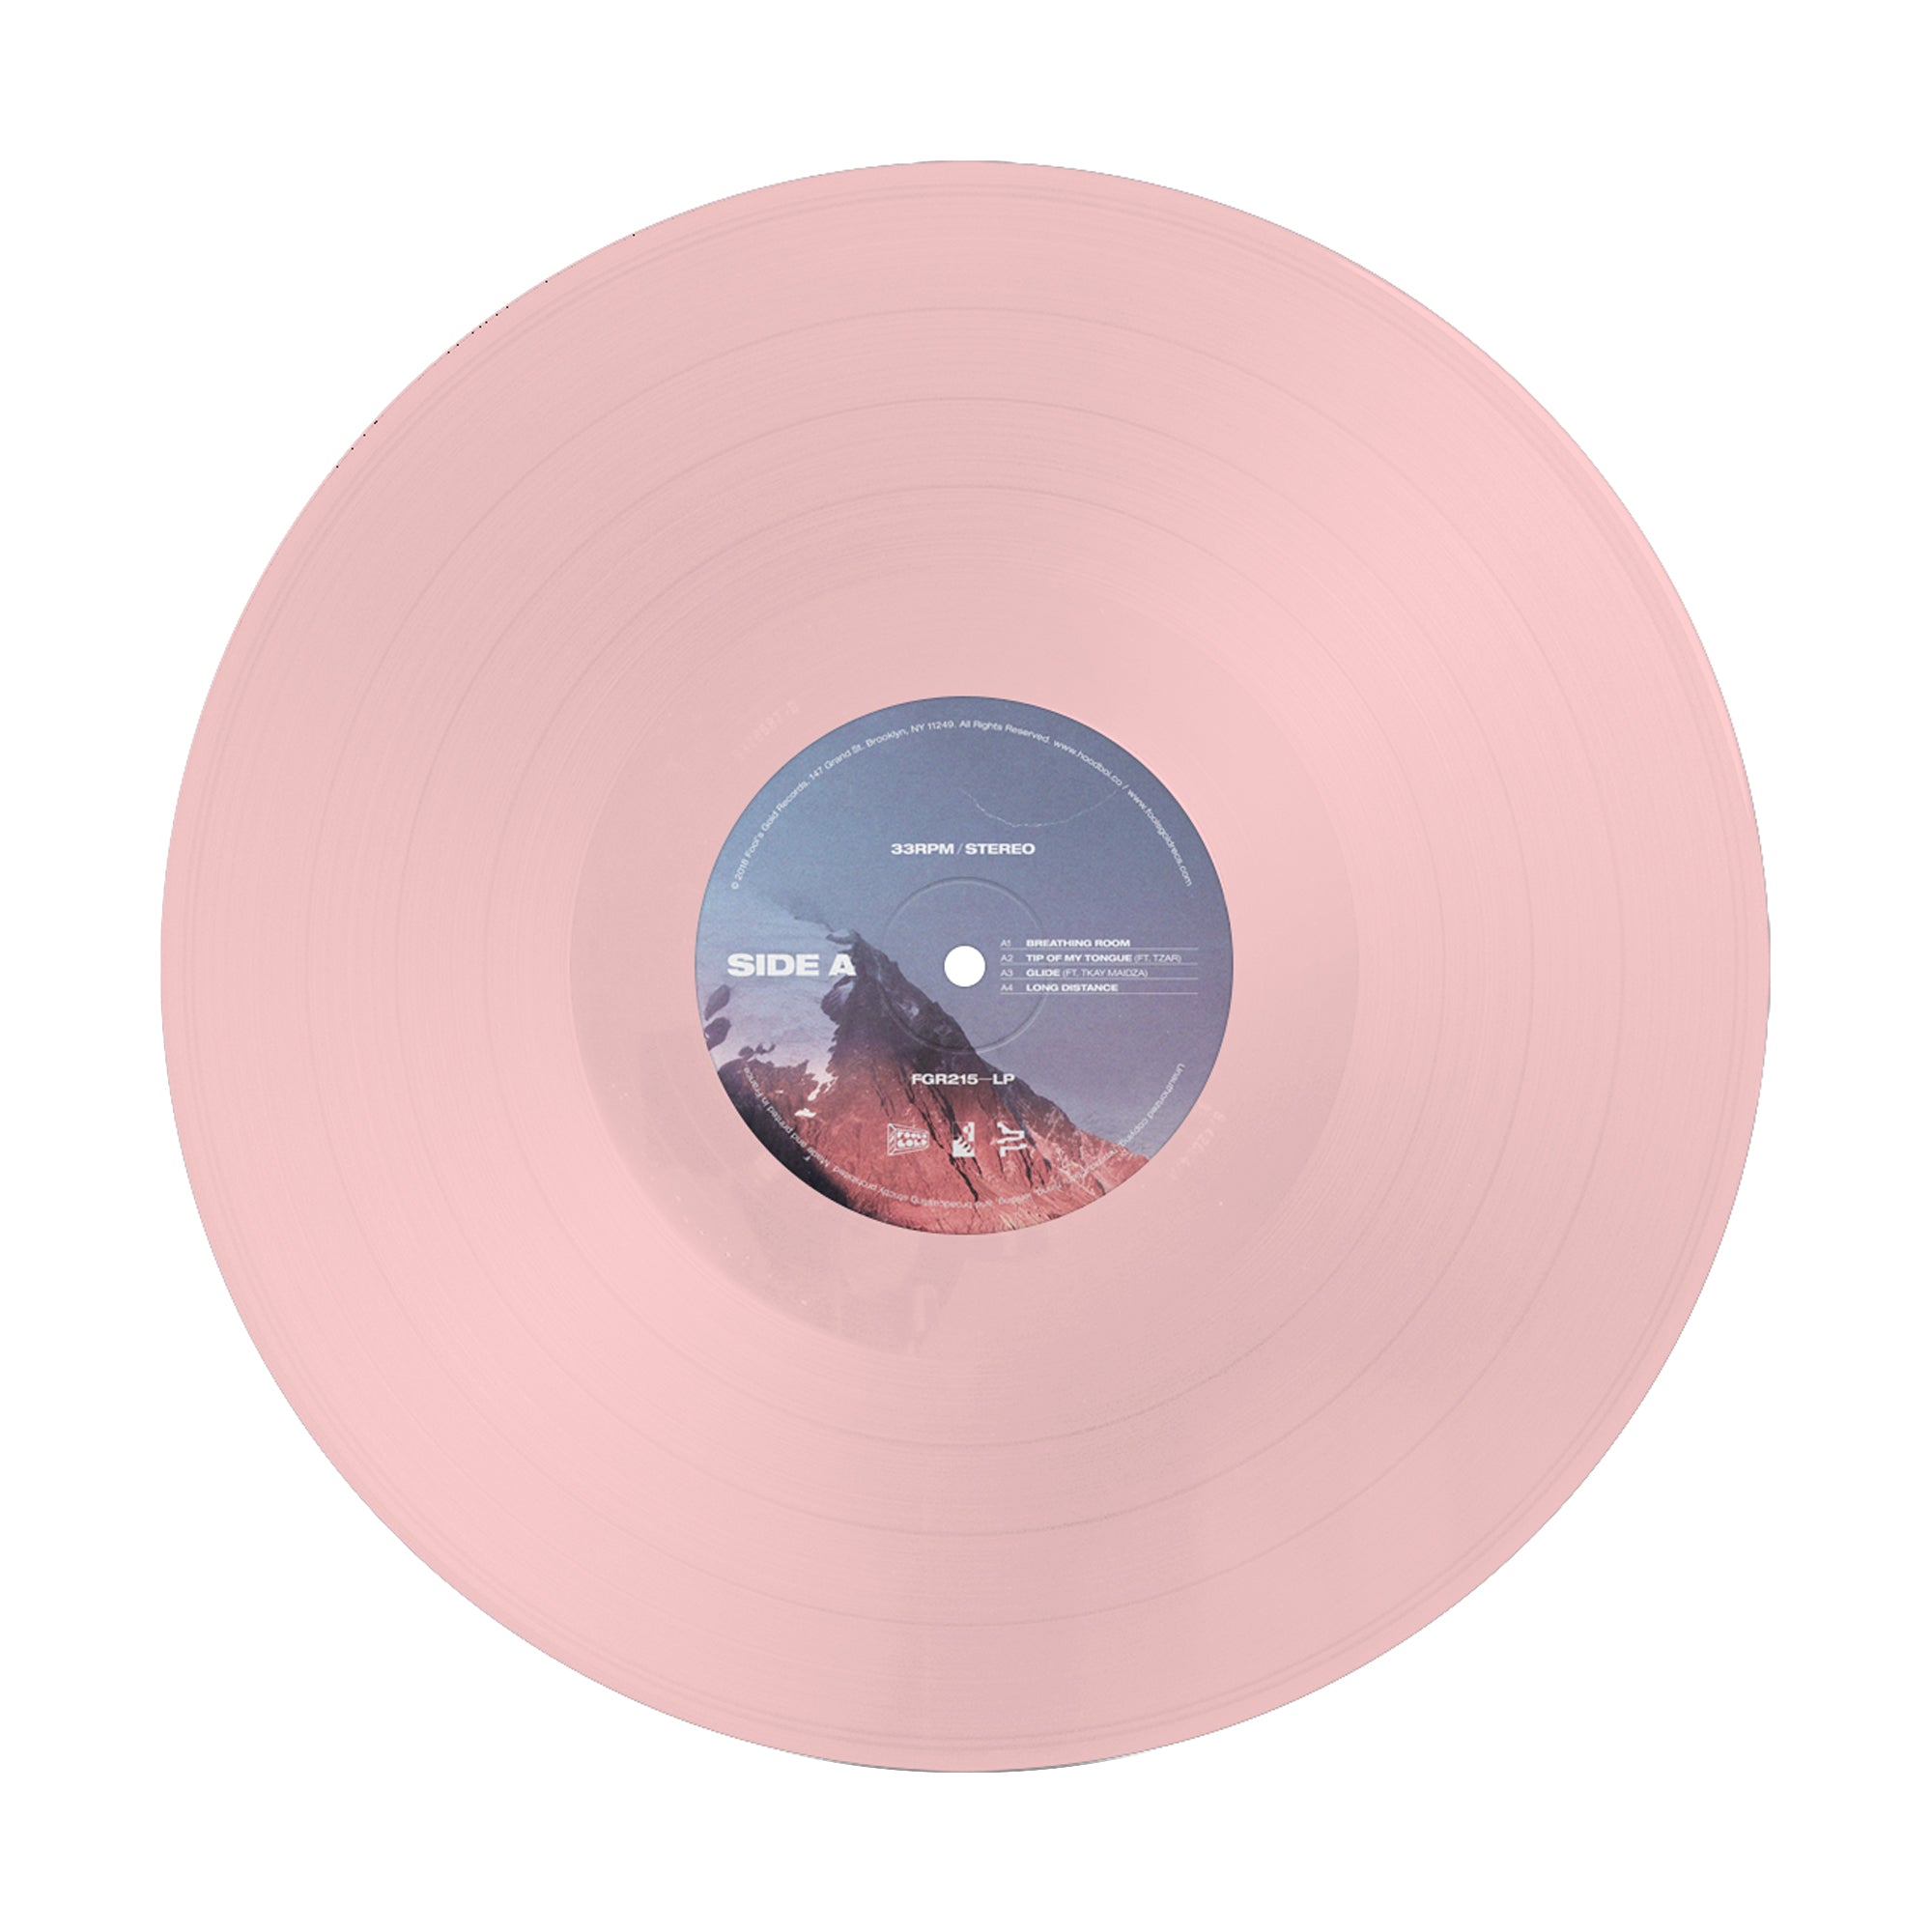 Hoodboi “Breathing Room” Color Vinyl 12”